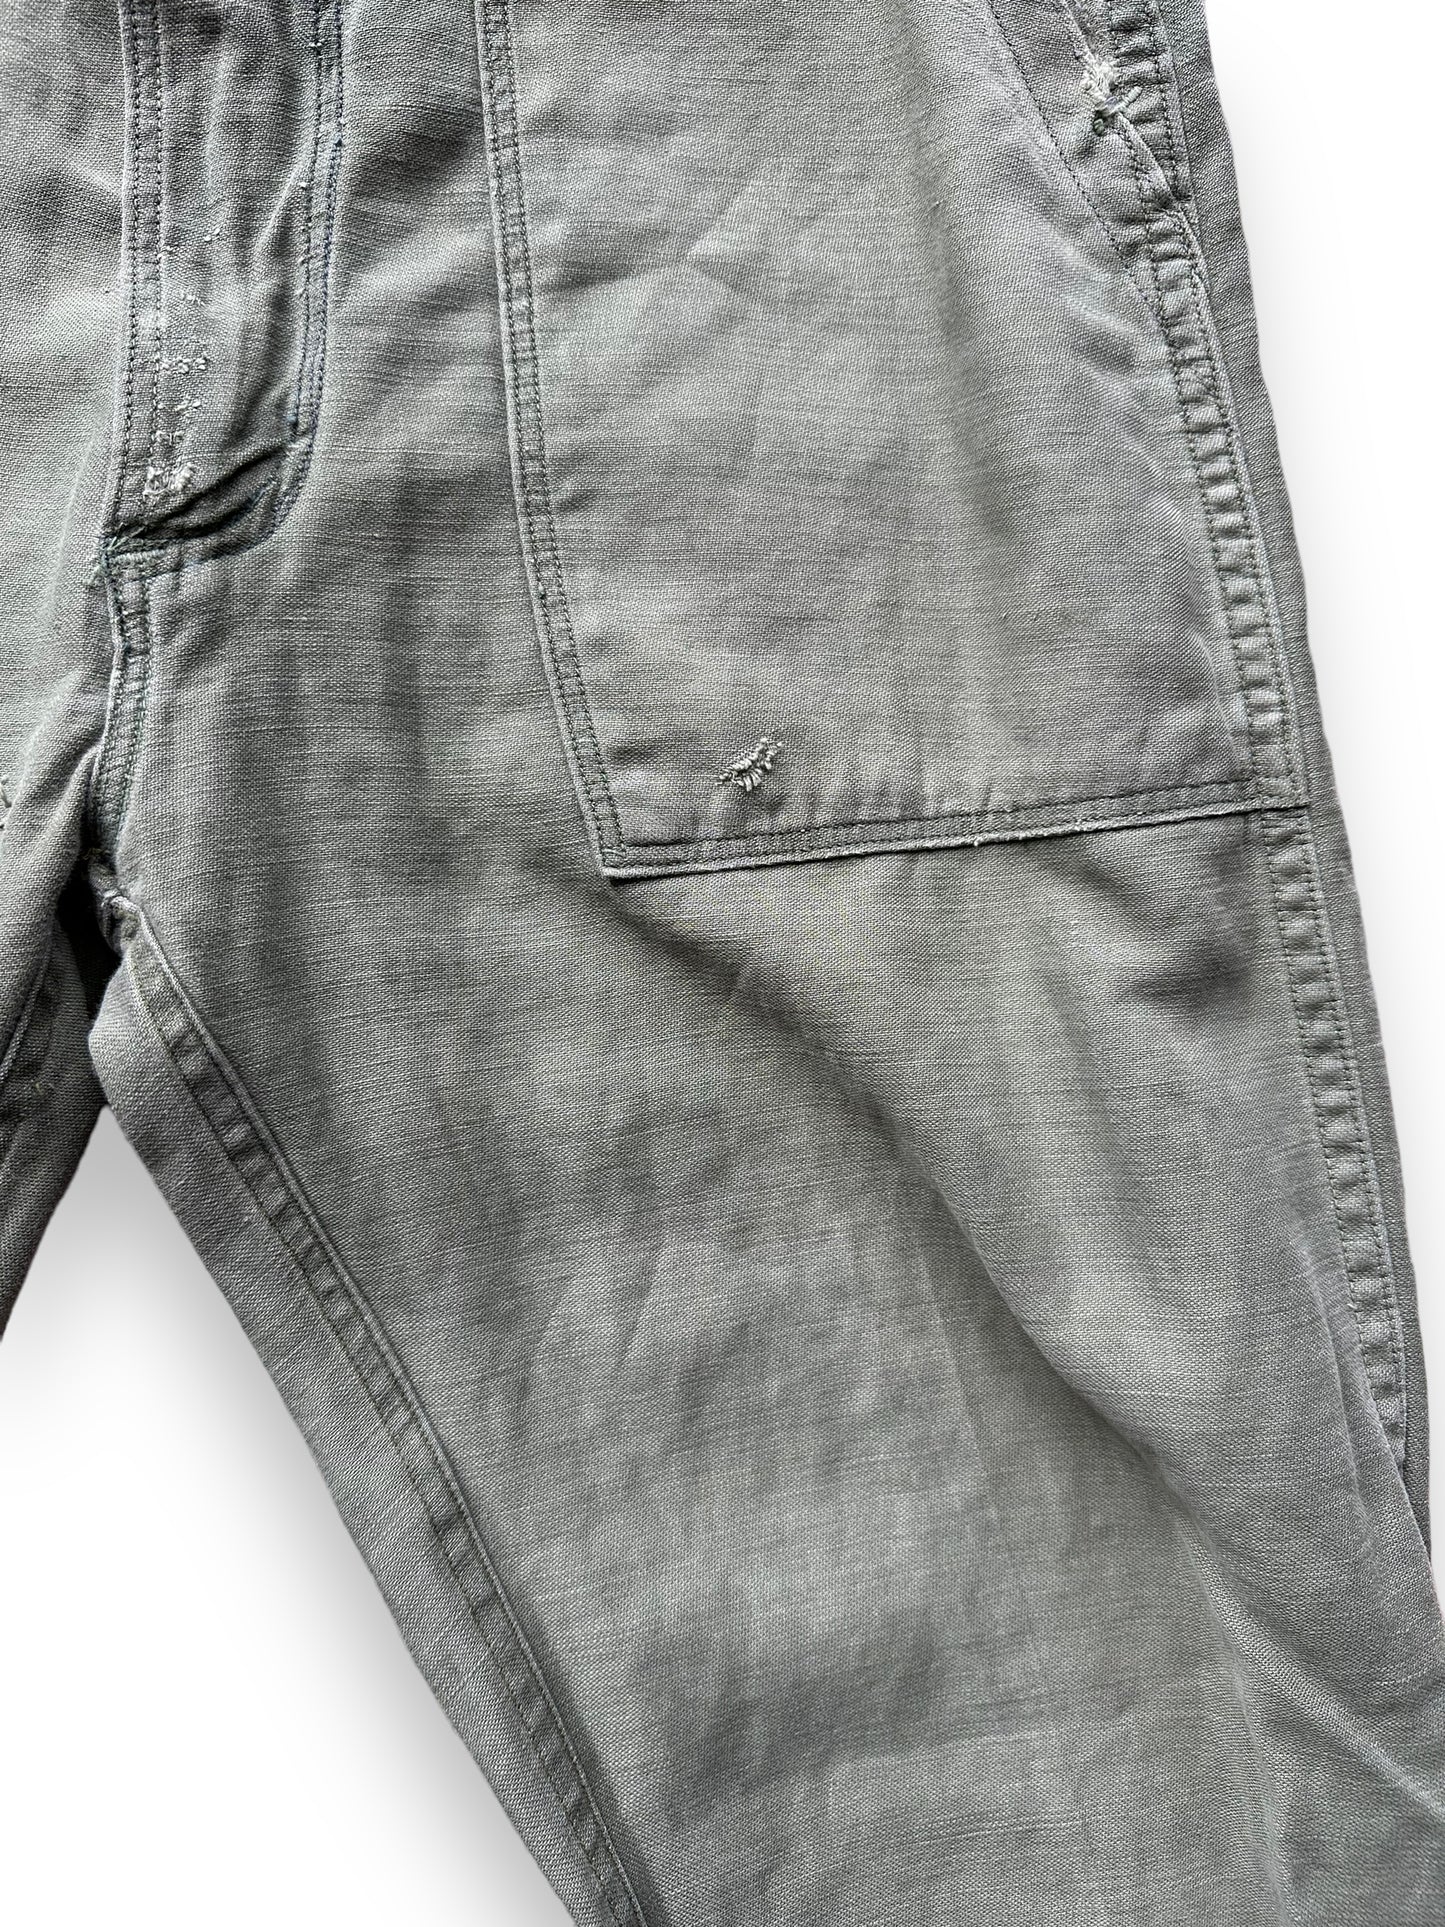 Left Front Pocket View on Vintage Sateen OG-107's W30 L32.5 | Vintage Viet Nam Era Baker Pants Seattle | Barn Owl Vintage Workwear